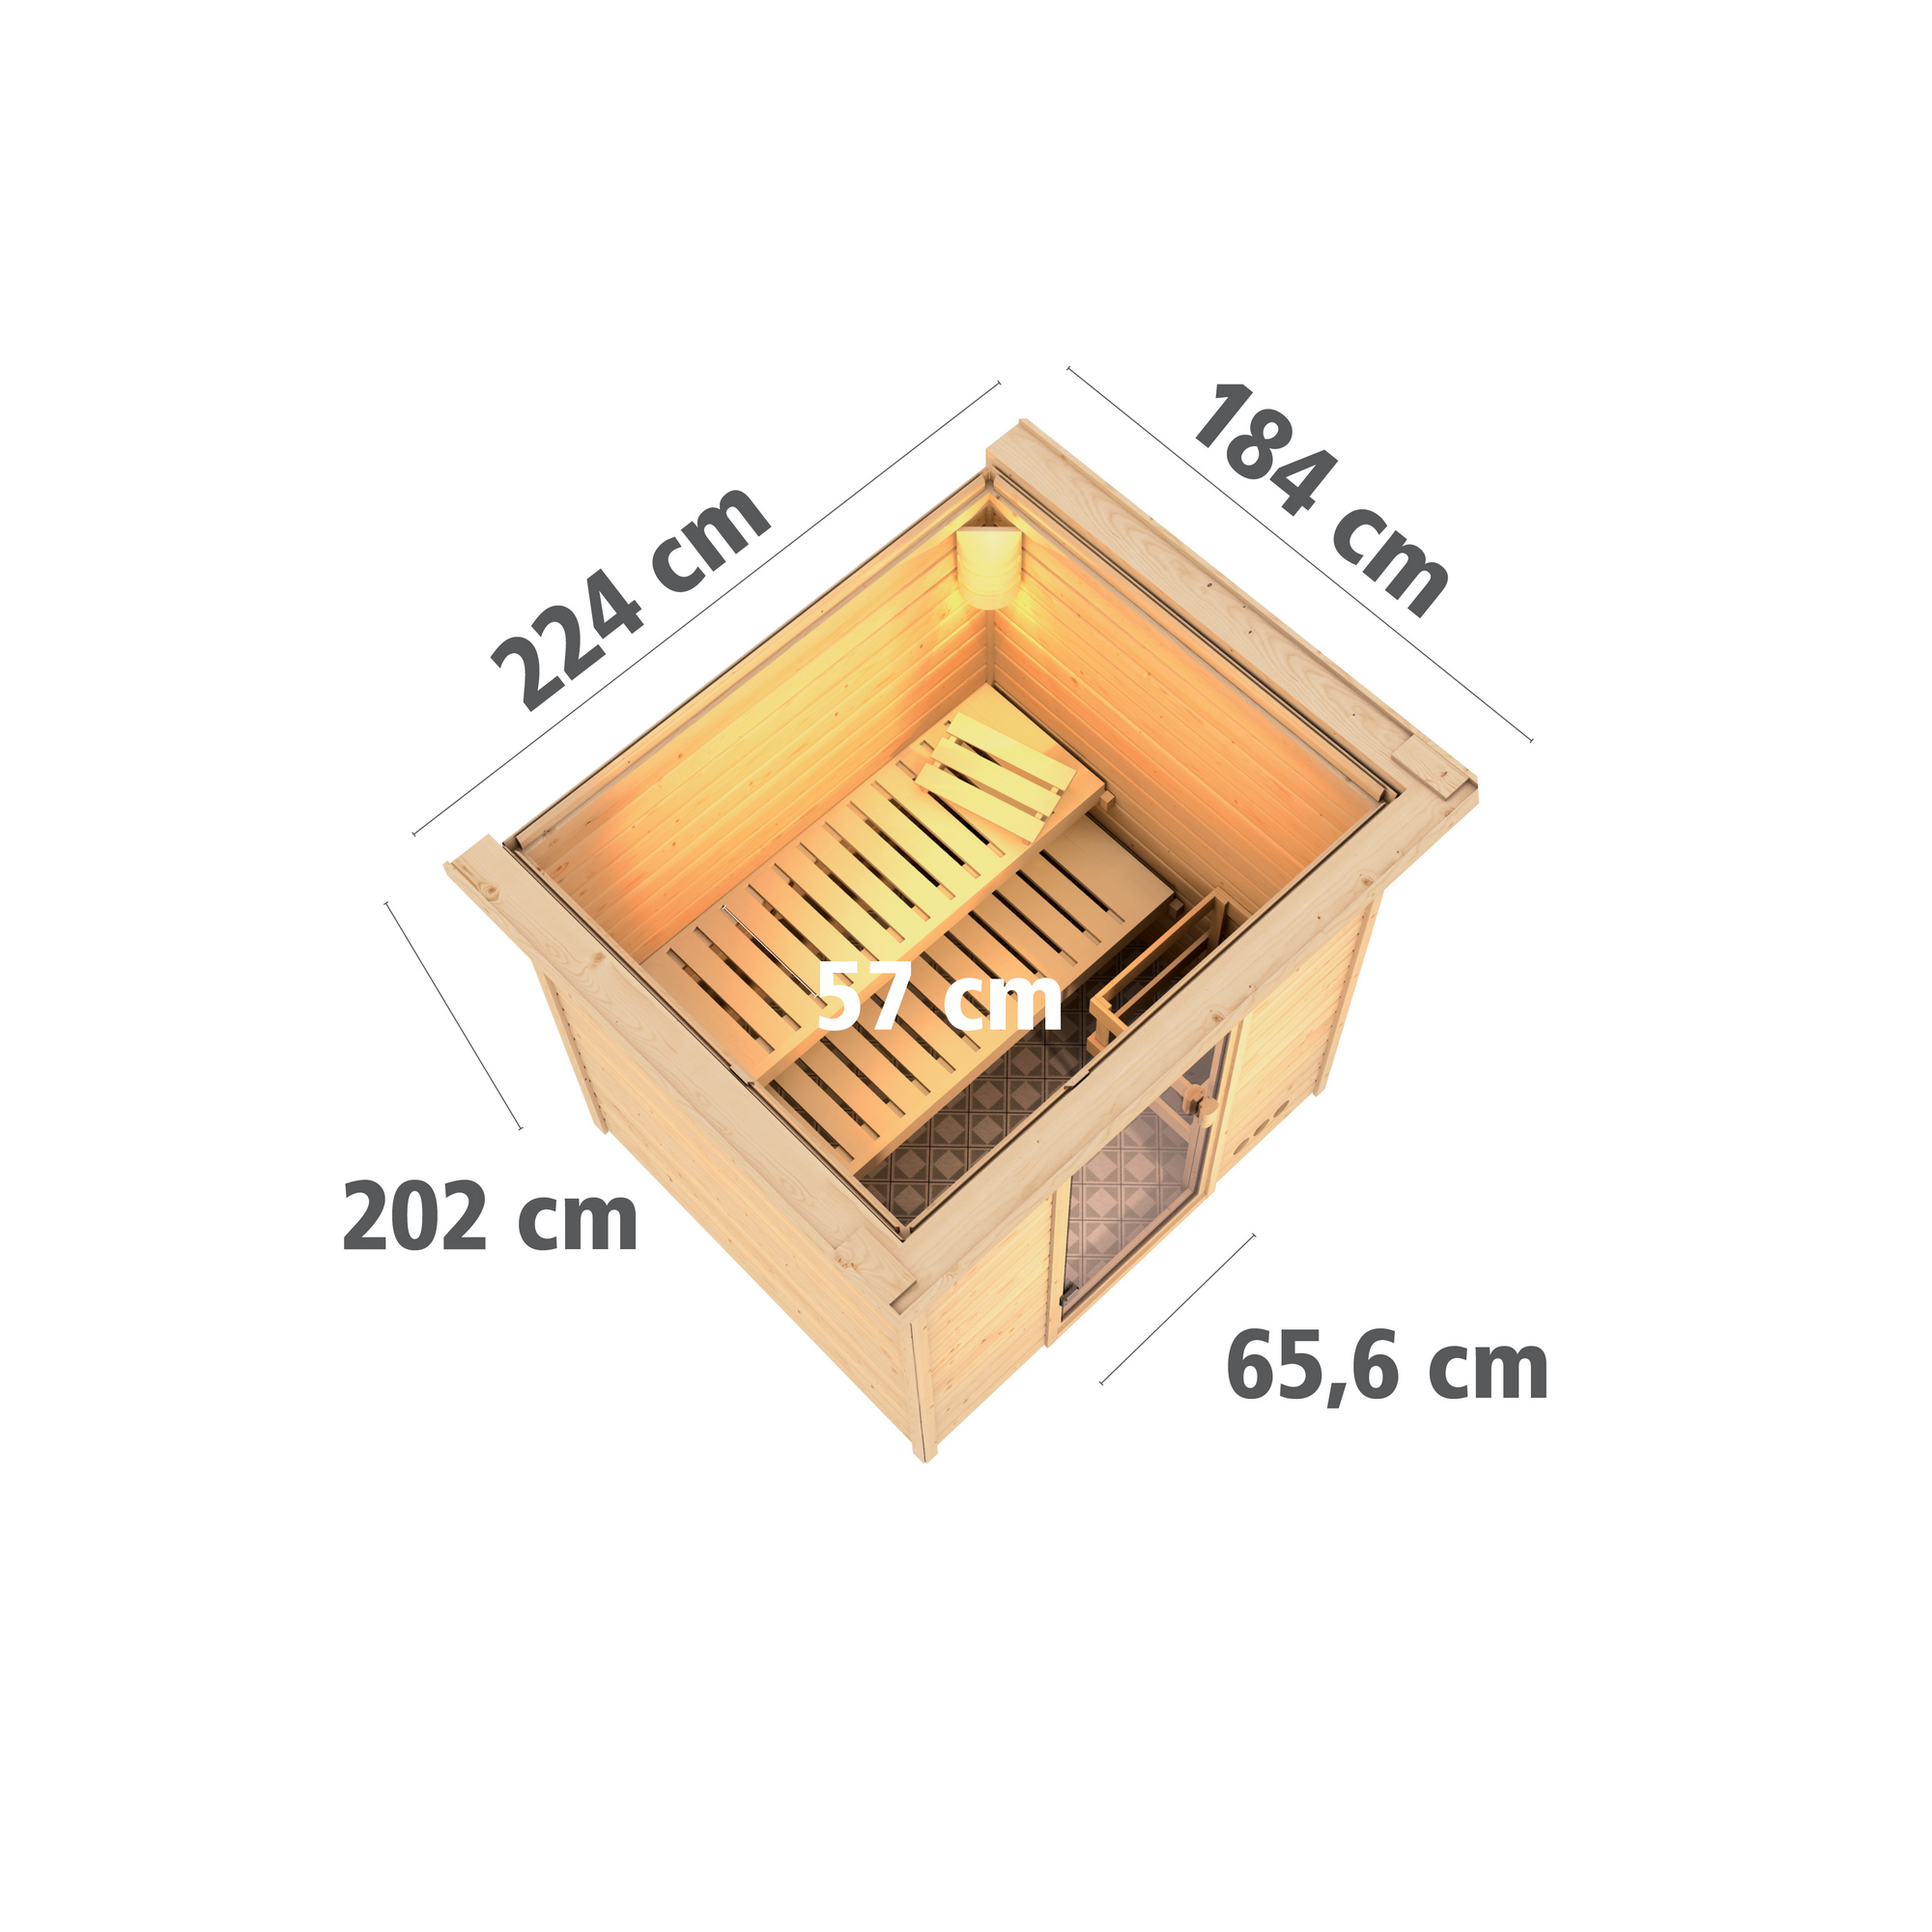 Massivholzsauna 'Jacinta' naturbelassen mit Kranz und bronzierter Tür 9 kW Ofen integrierte Steuerung 224 x 184 x 202 cm + product picture